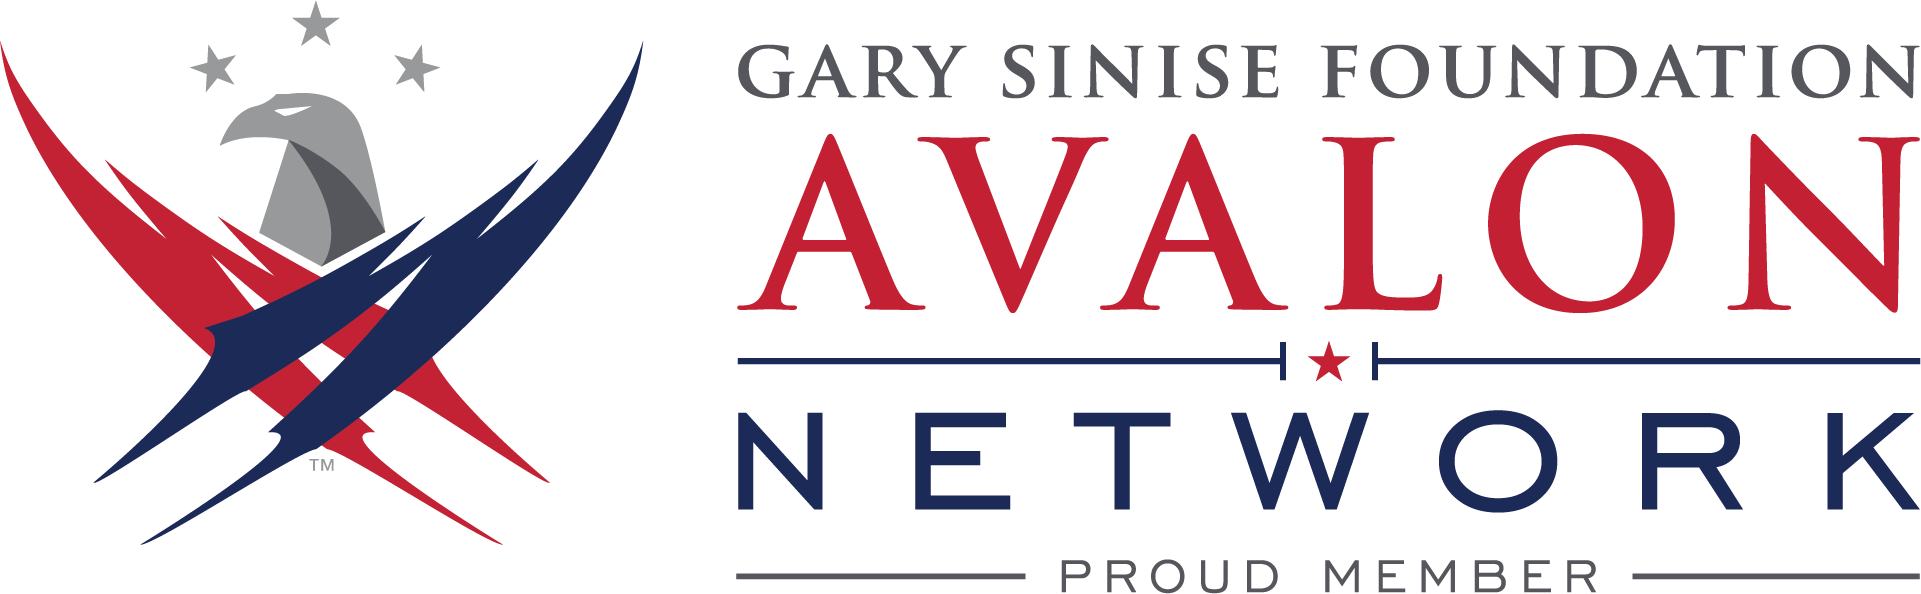 Gary Sinise Foundation Avalon Network logo